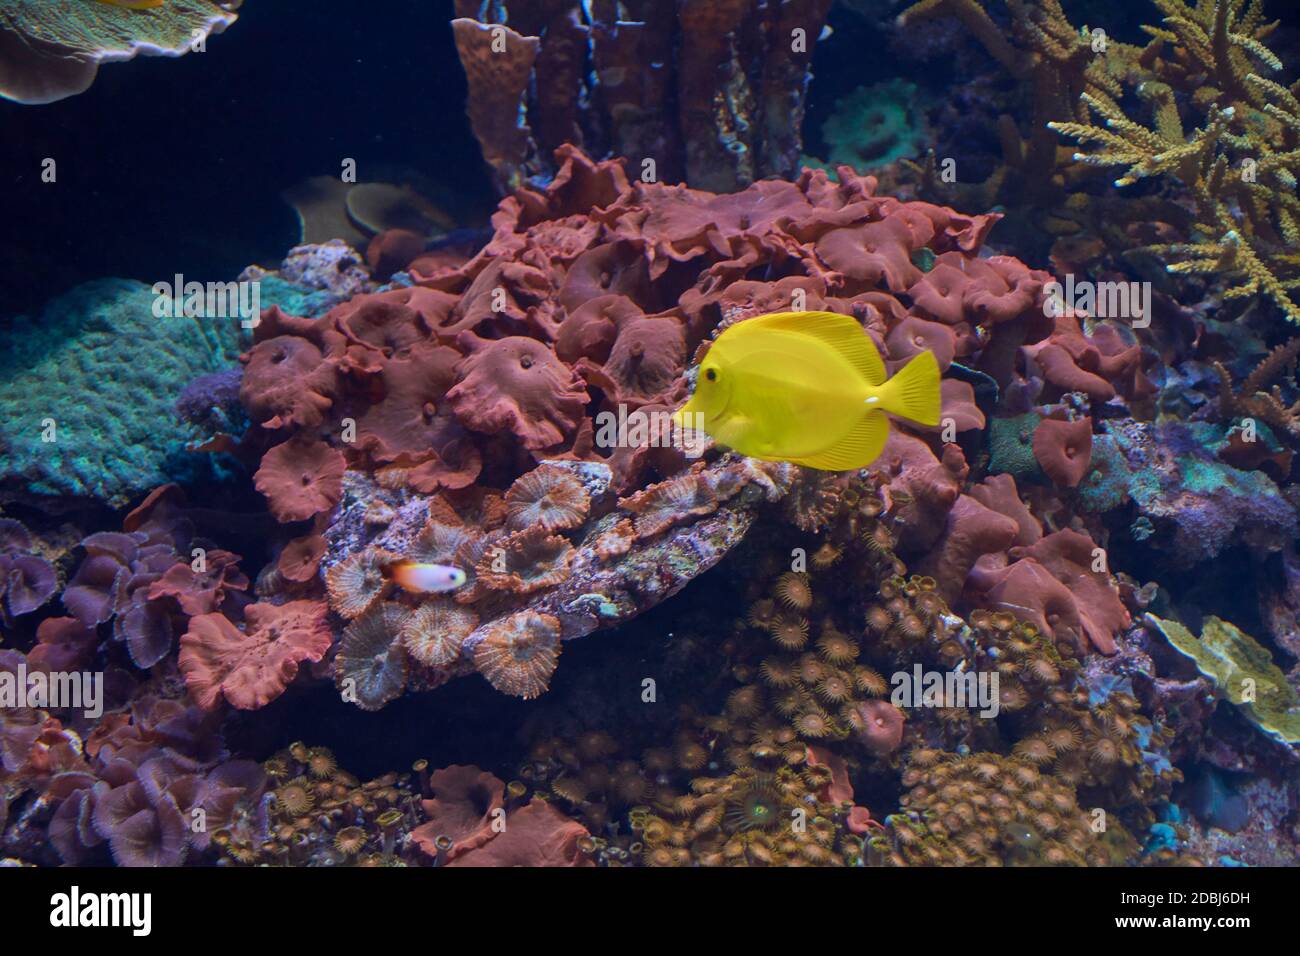 Small yellow fish in the ocean,lonely, shiny, rocks, algae Stock Photo